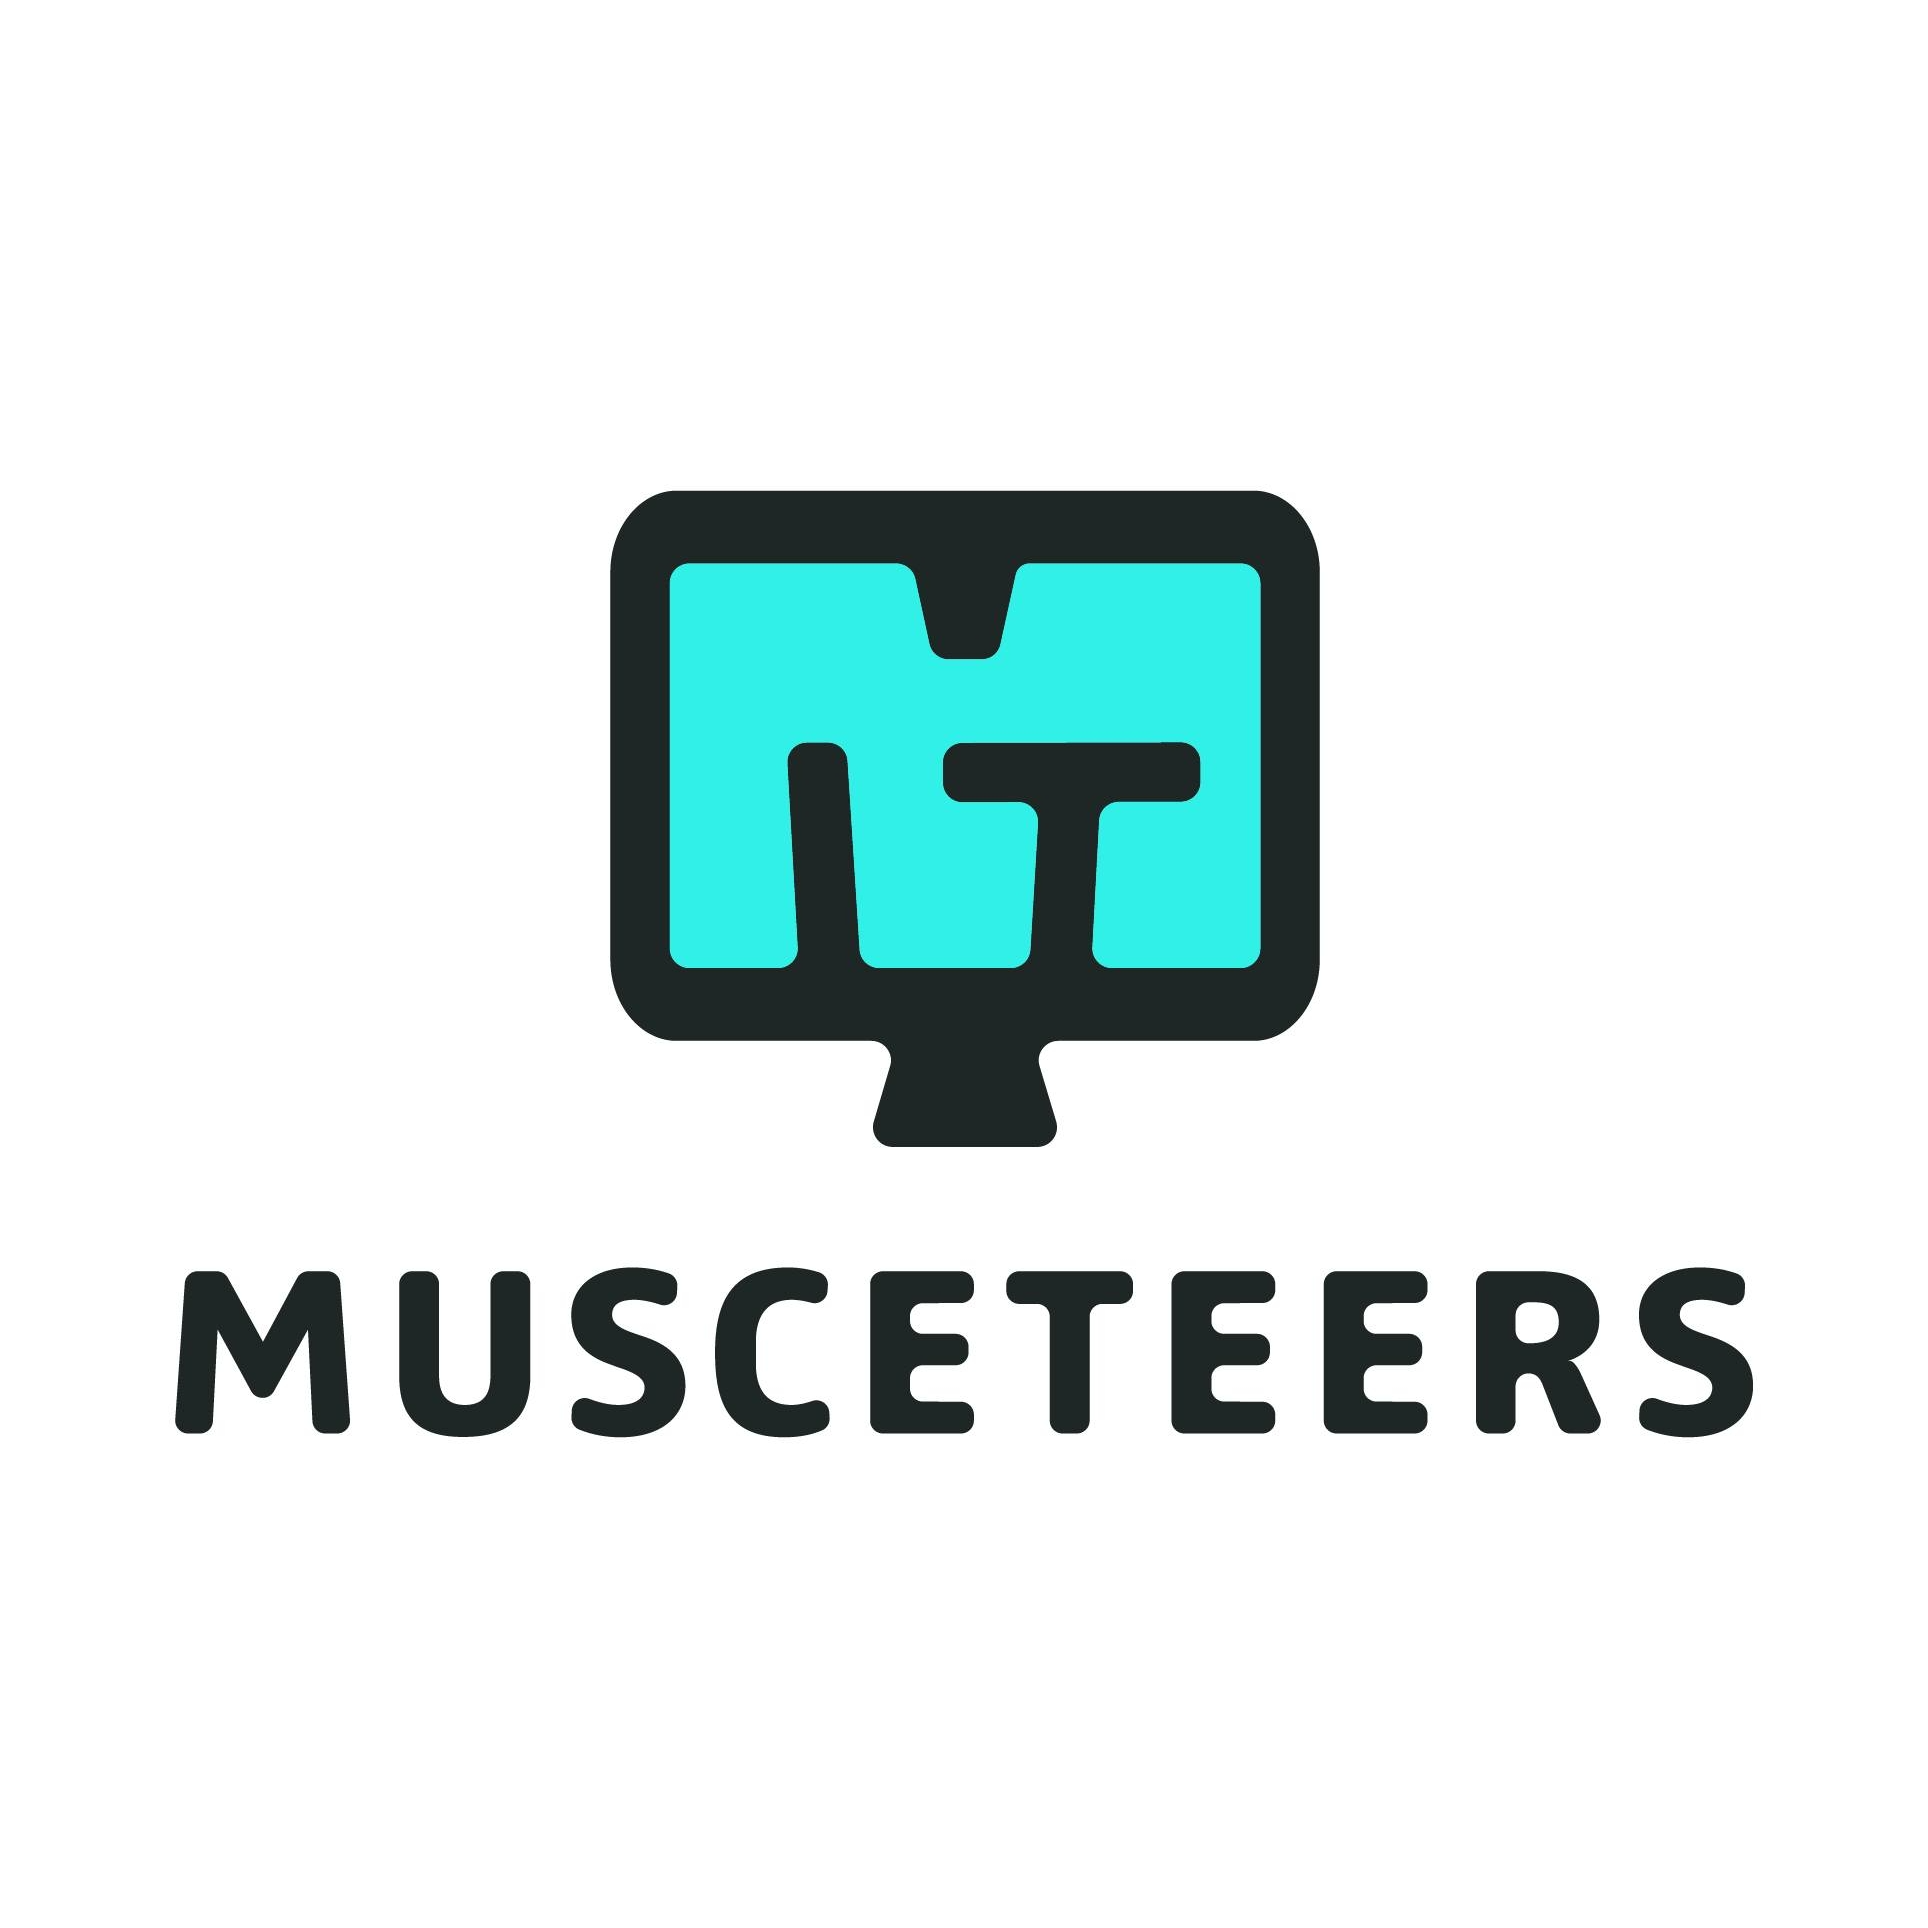 Musceteers IT GmbH in Berlin - Logo